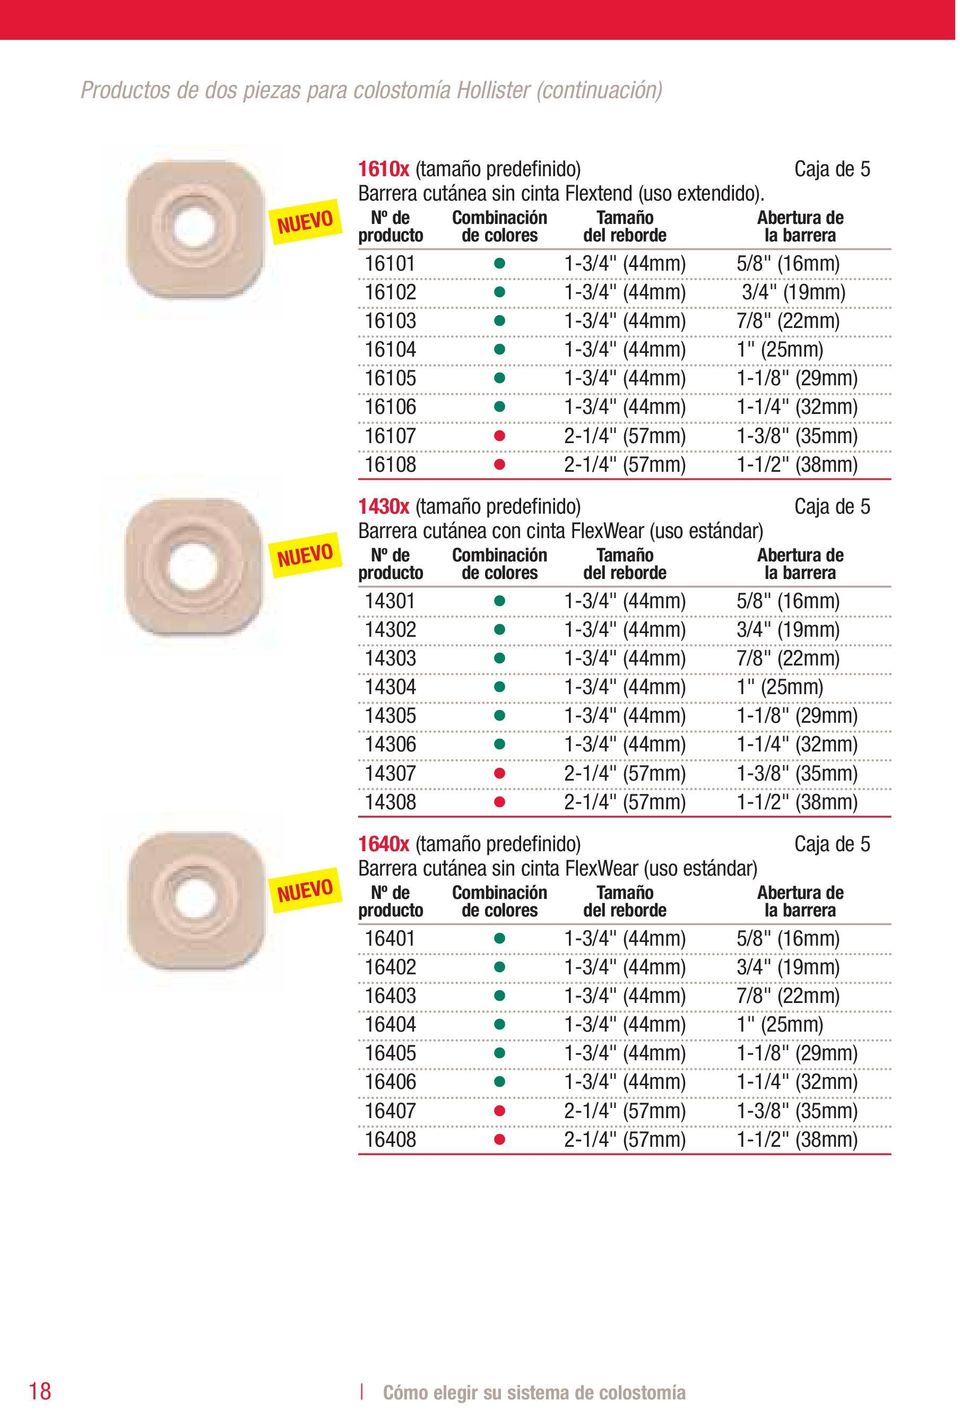 (29mm) 16106 1-3/4" (44mm) 1-1/4" (32mm) 16107 2-1/4" (57mm) 1-3/8" (35mm) 16108 2-1/4" (57mm) 1-1/2" (38mm) 1430x (tamaño predefinido) Caja de 5 Barrera cutánea con cinta FlexWear (uso estándar)